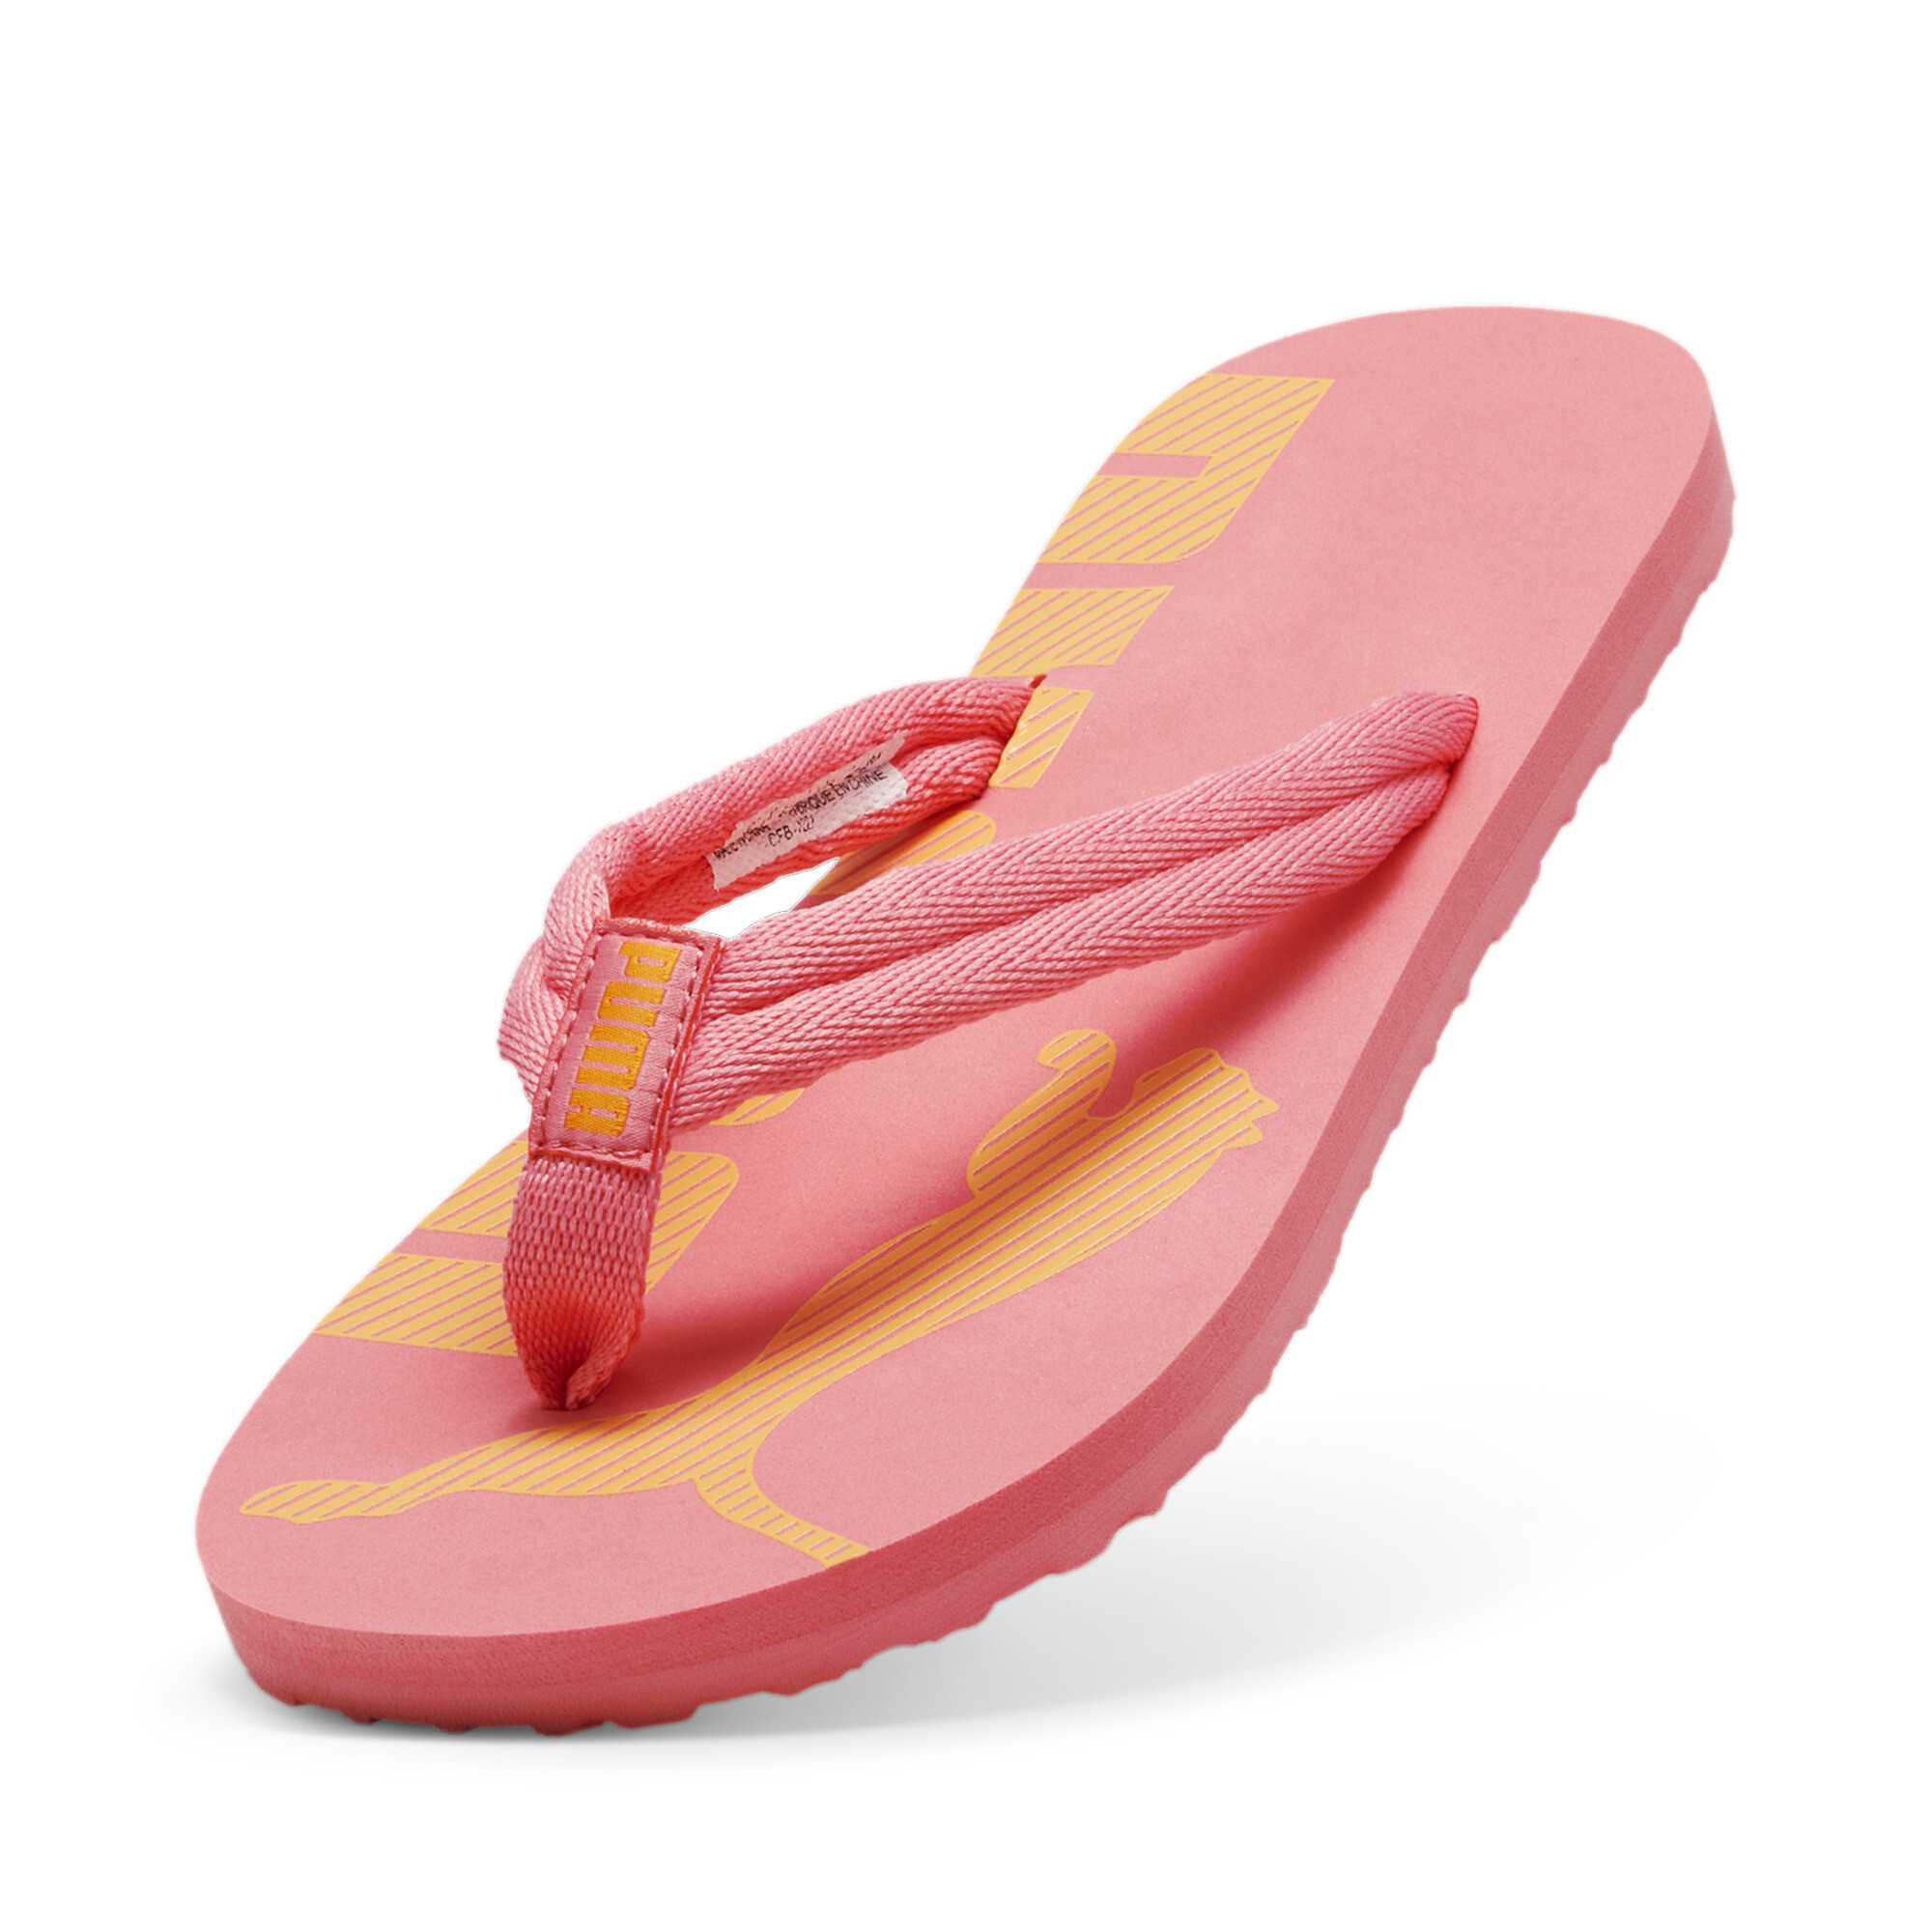 Men's PUMA Epic Flip V2 Sandals In Pink, Size EU 39